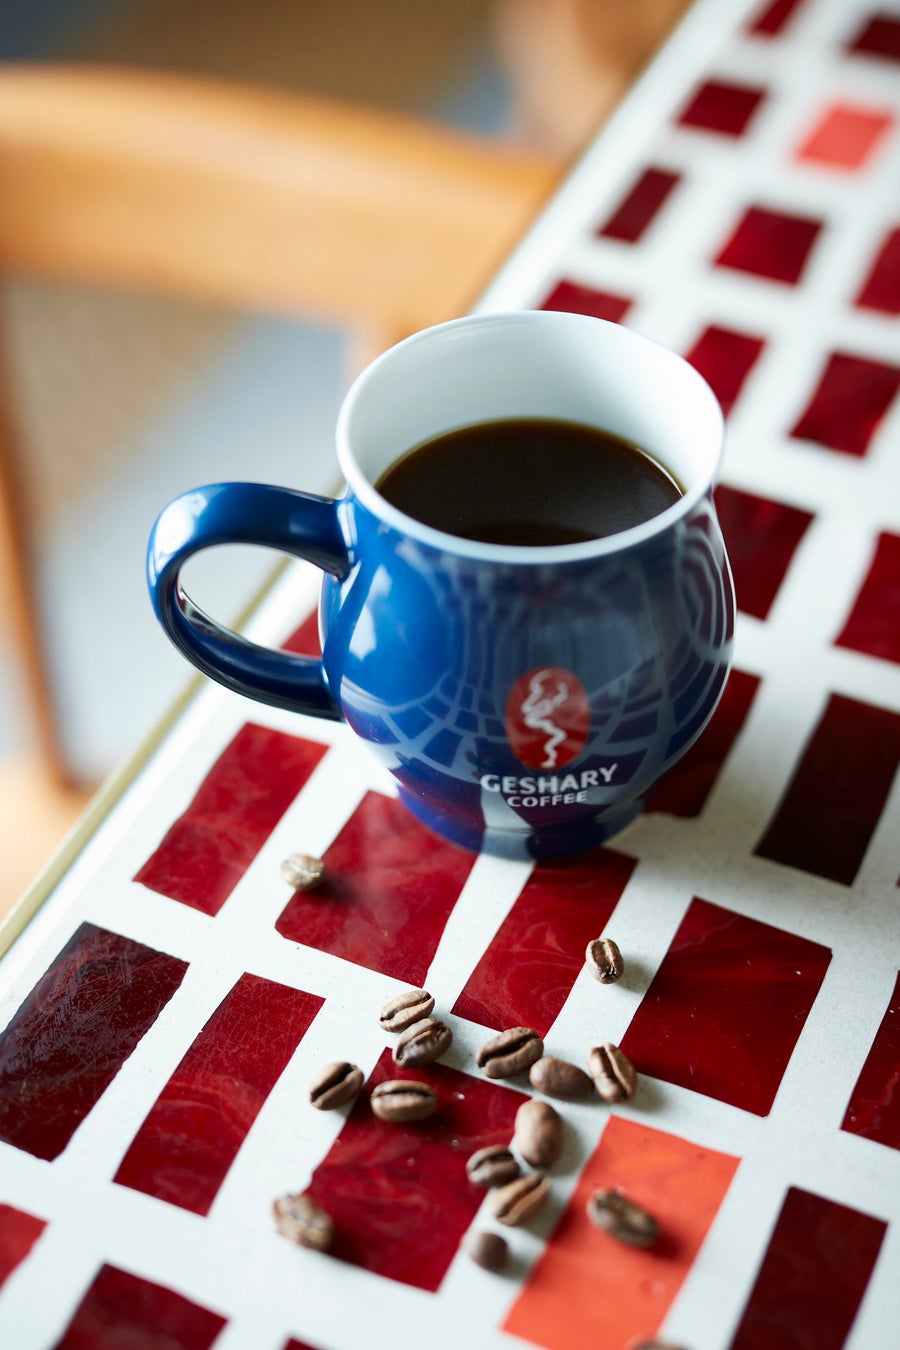 【名古屋タカシマヤ】「幻のコーヒー」と称される希少品種や国内外の大会で活躍するプロフェッショナルによるこだわりのコーヒーに注目！”コーヒー”に特化した催事「珈琲を愉しむ」を開催